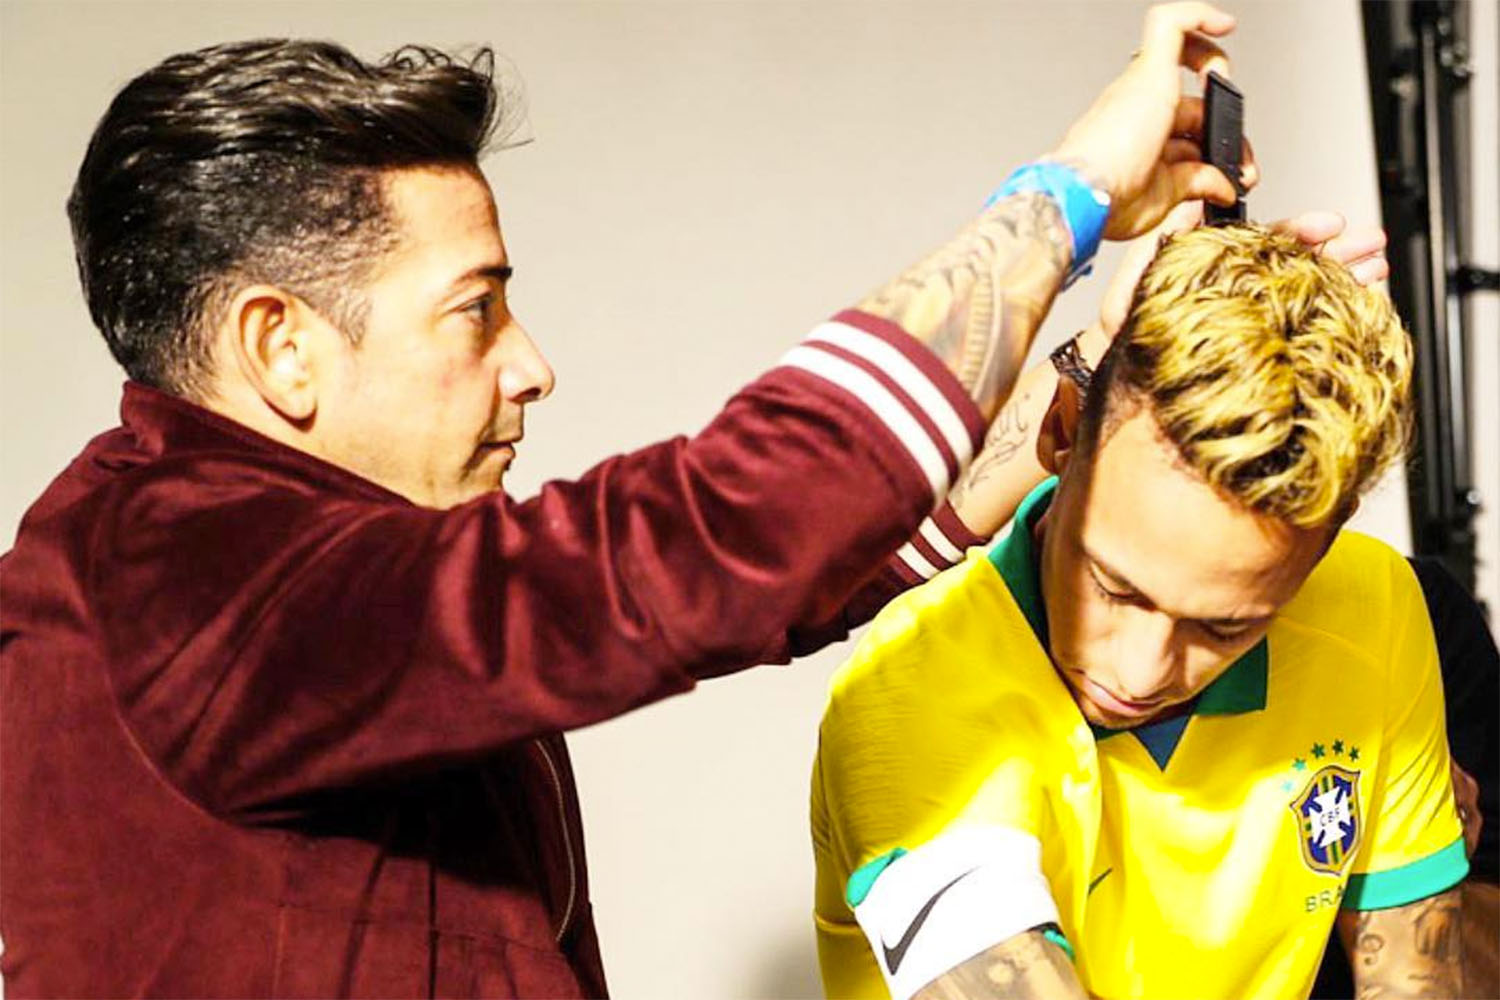 Cabeleireiro de Neymar ‘entrega’ nova camisa da seleção brasileira